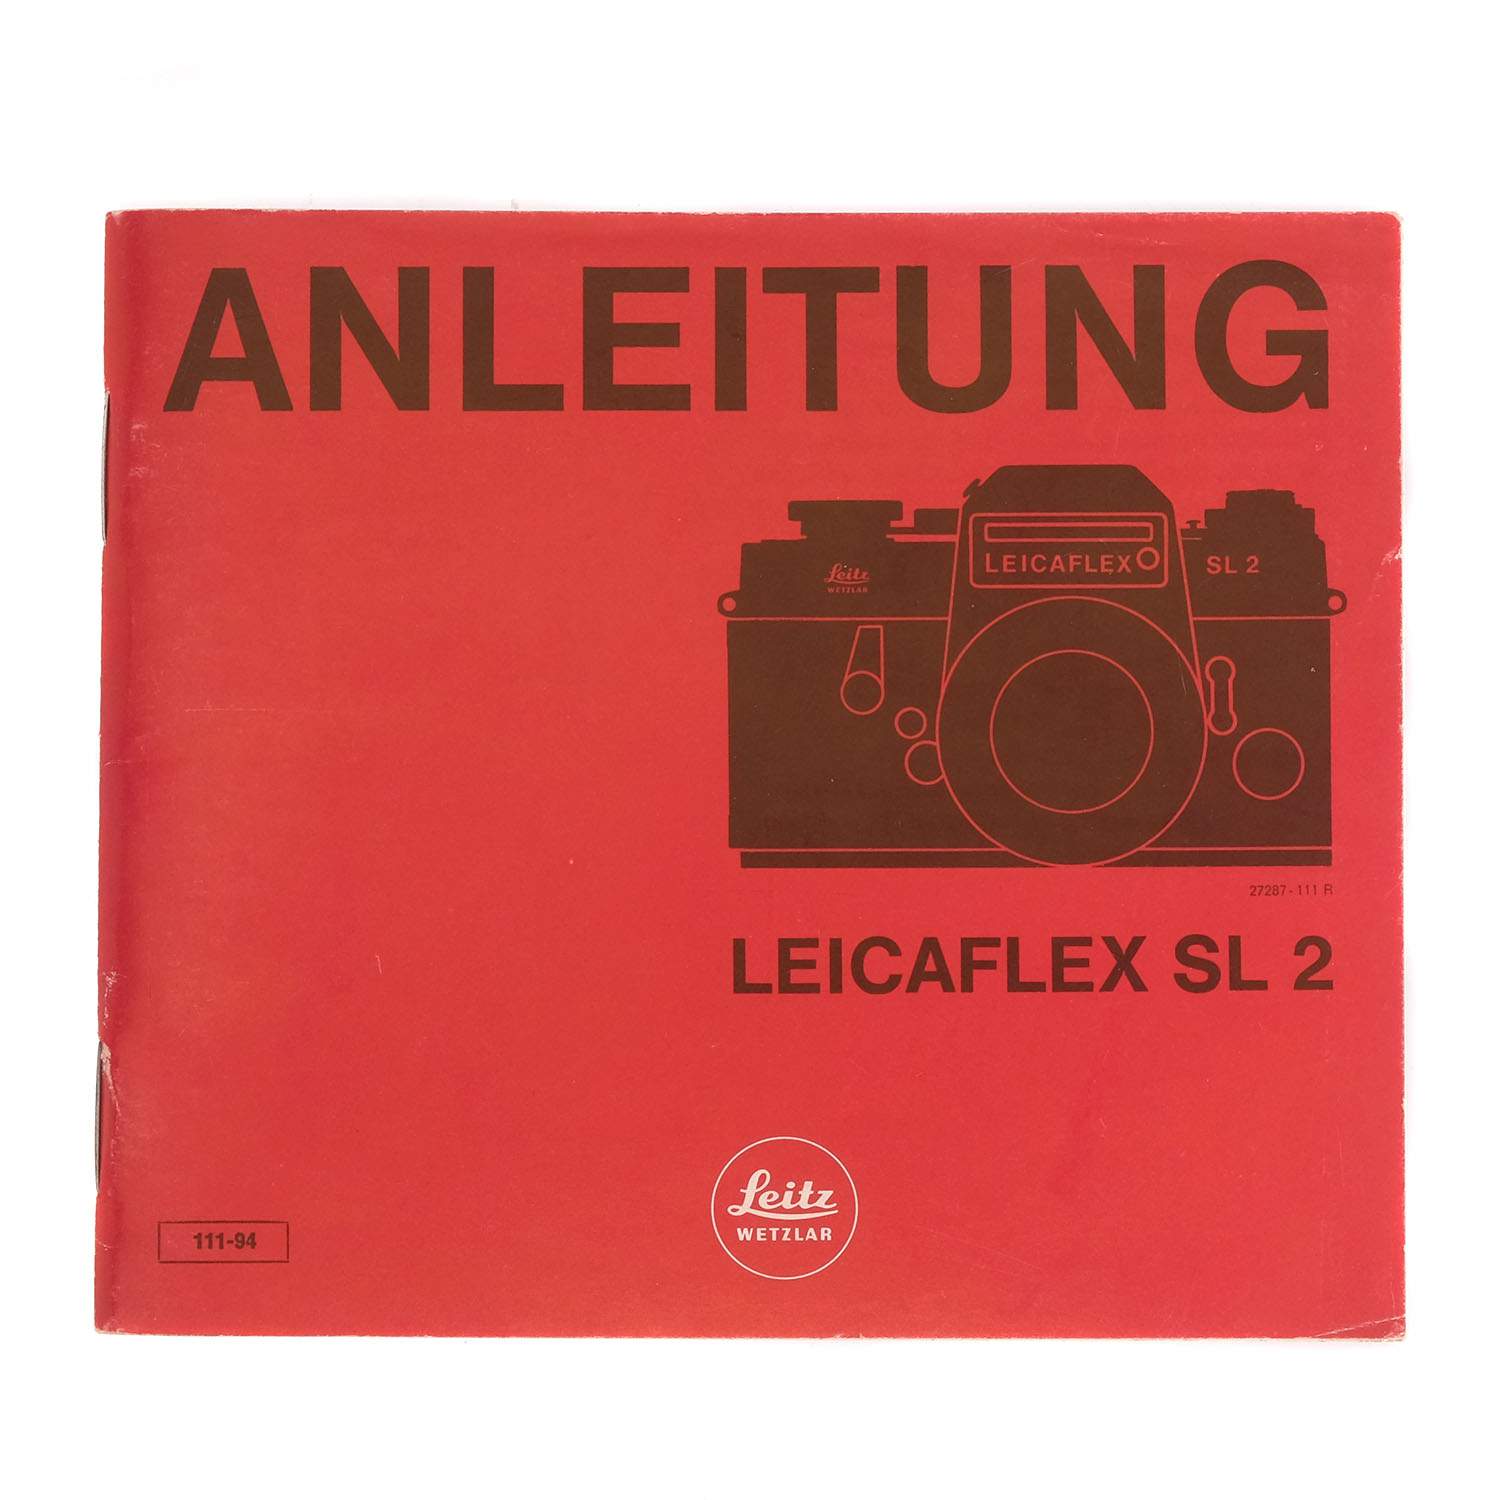 Leicaflex SL 2 Anleitung 